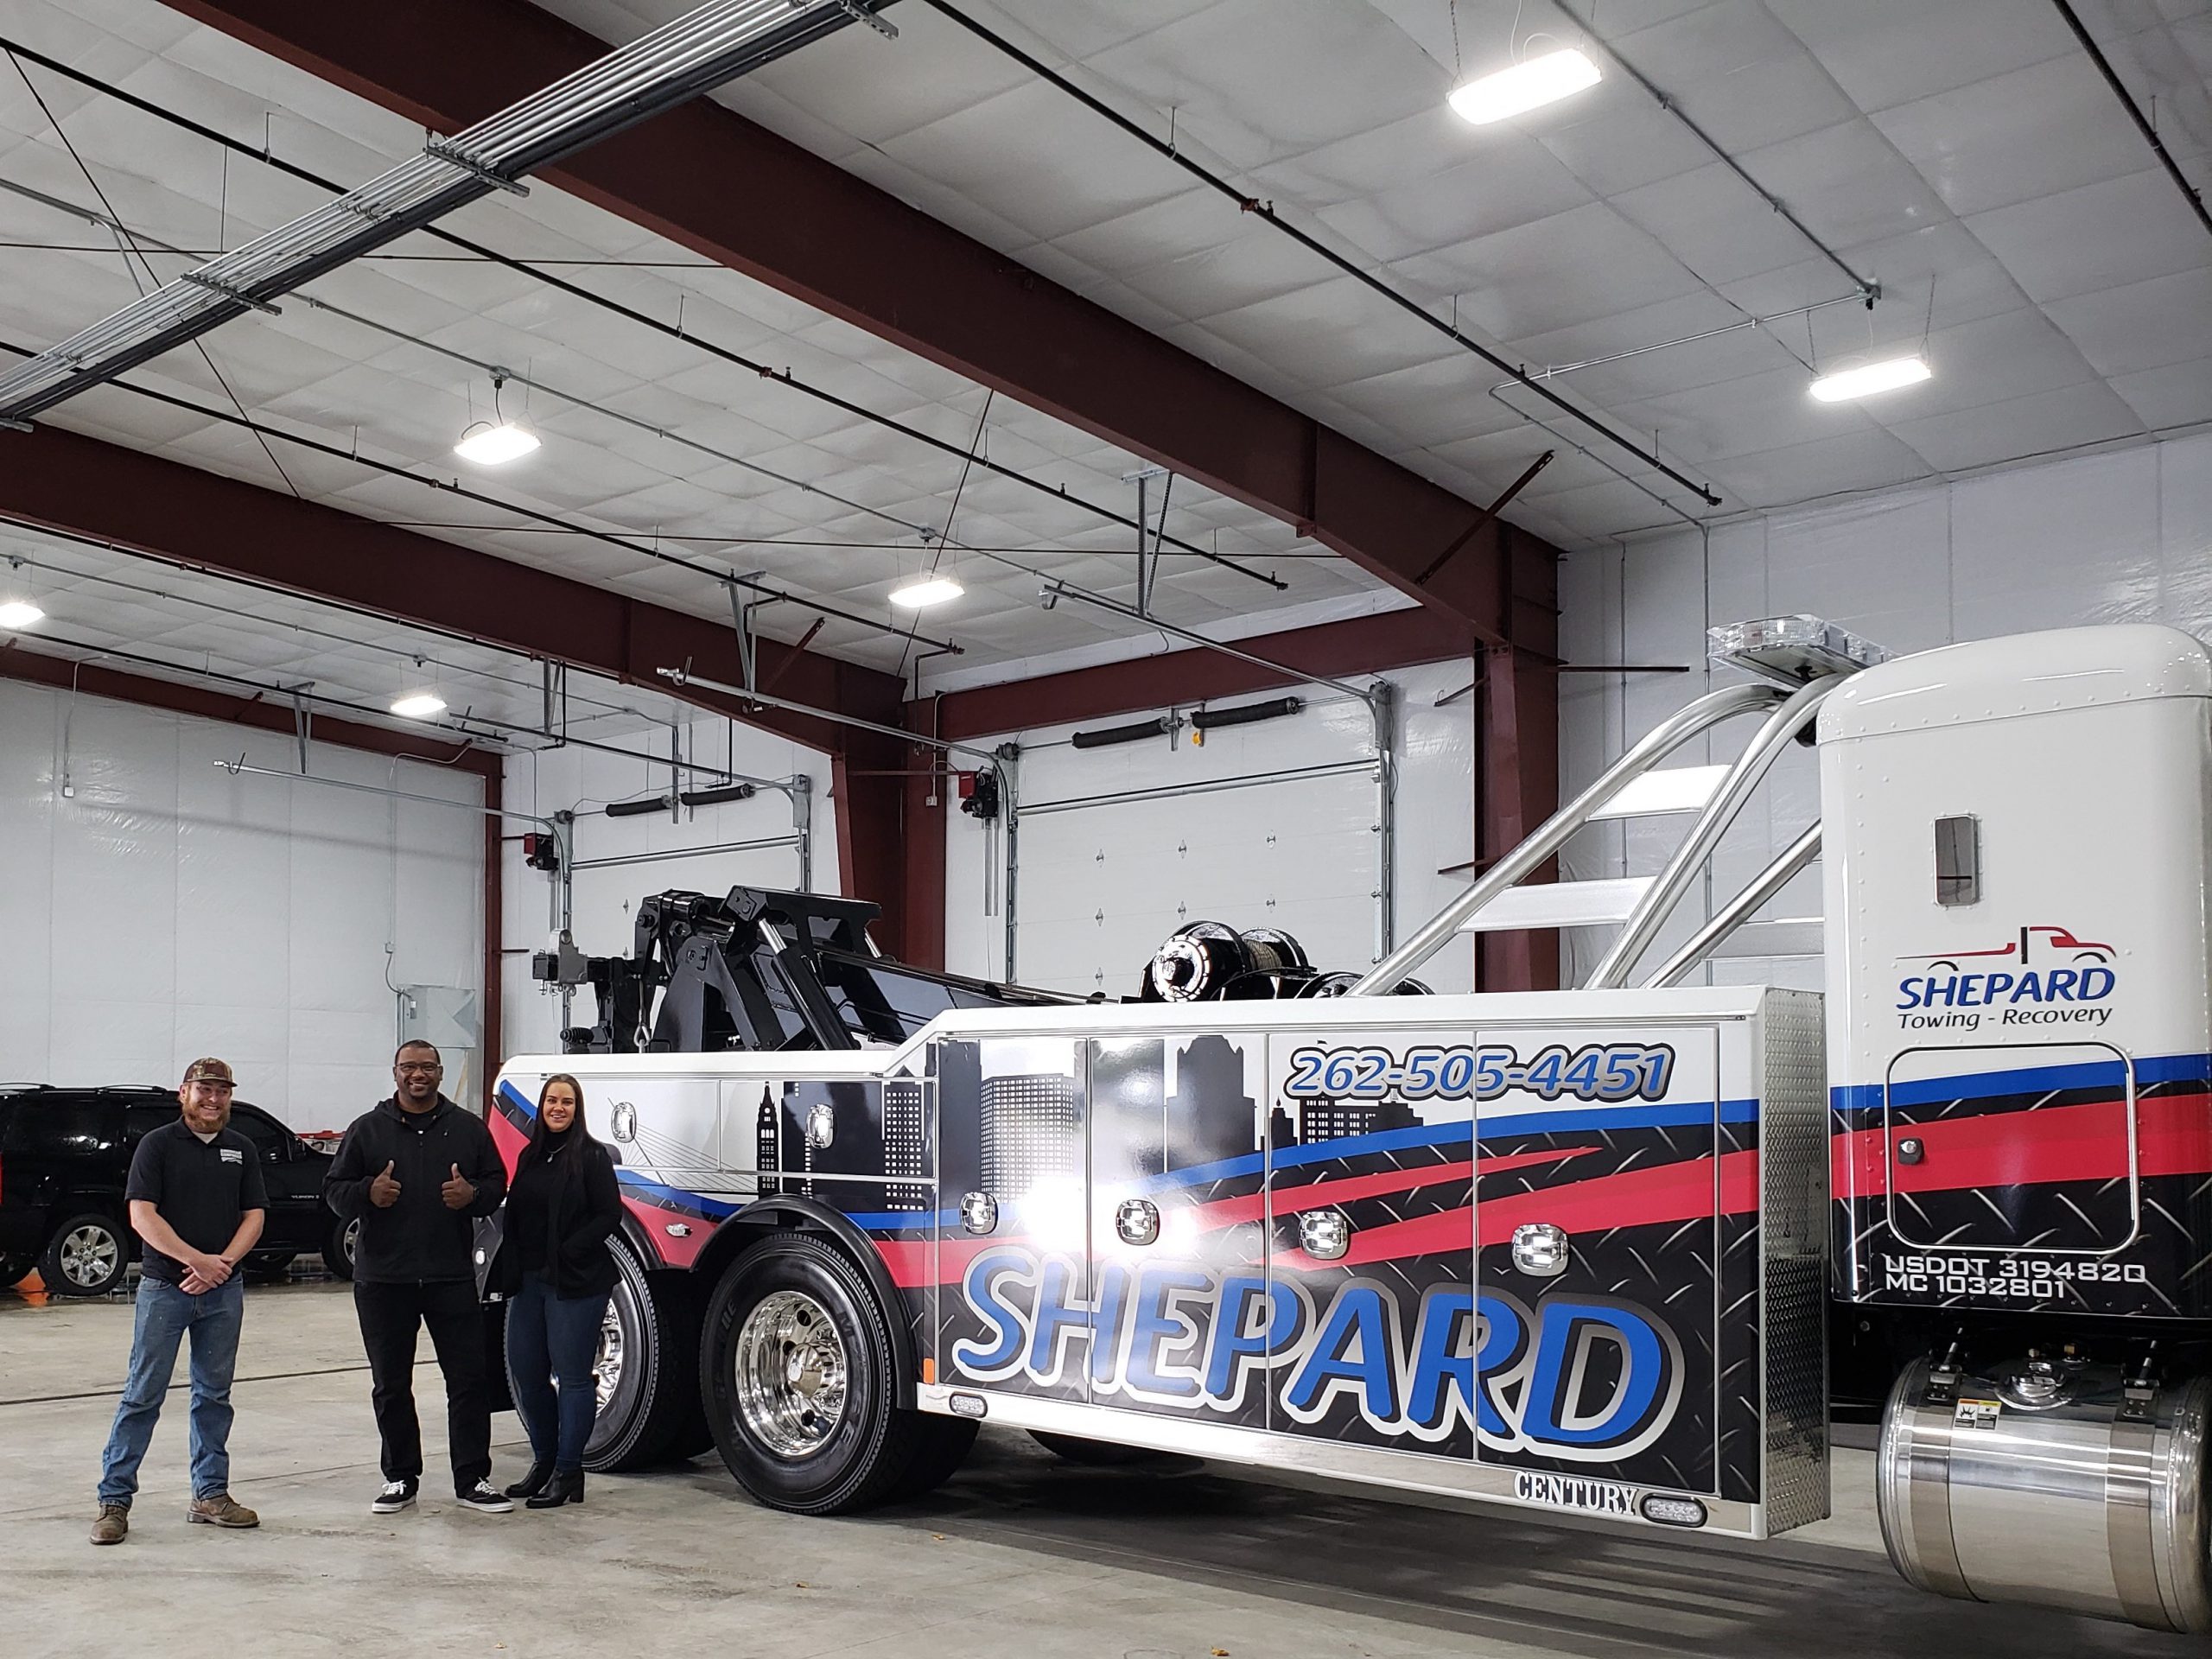 Shepard Trucking